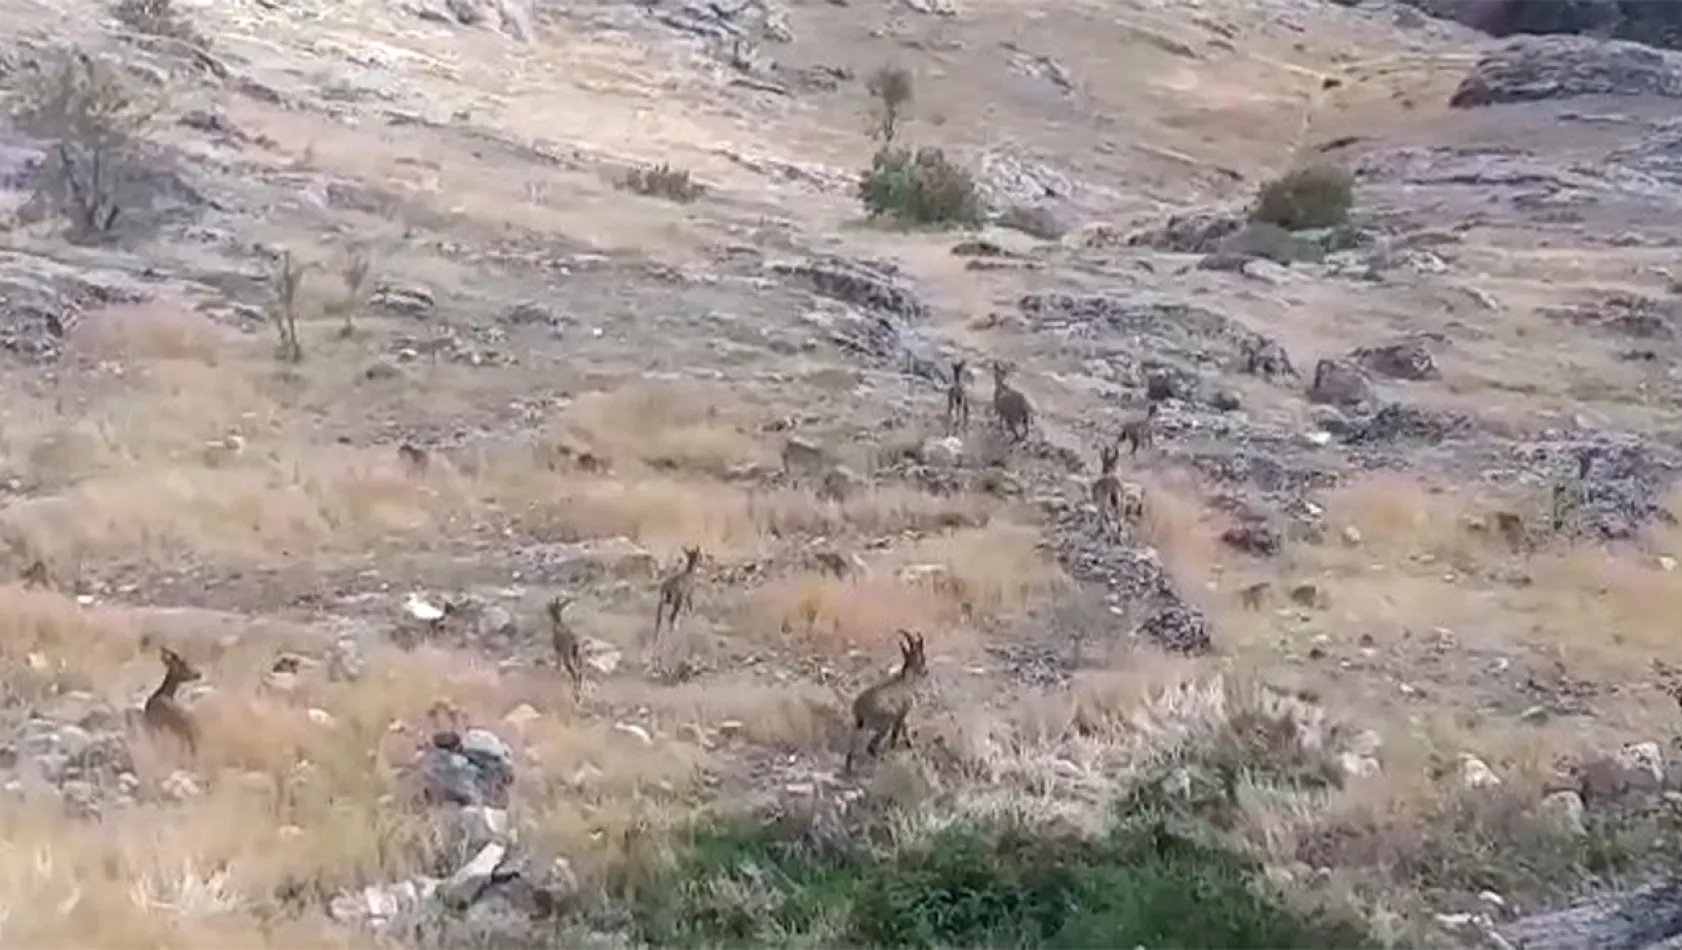 Harput'ta dağ keçileri görüntülendi